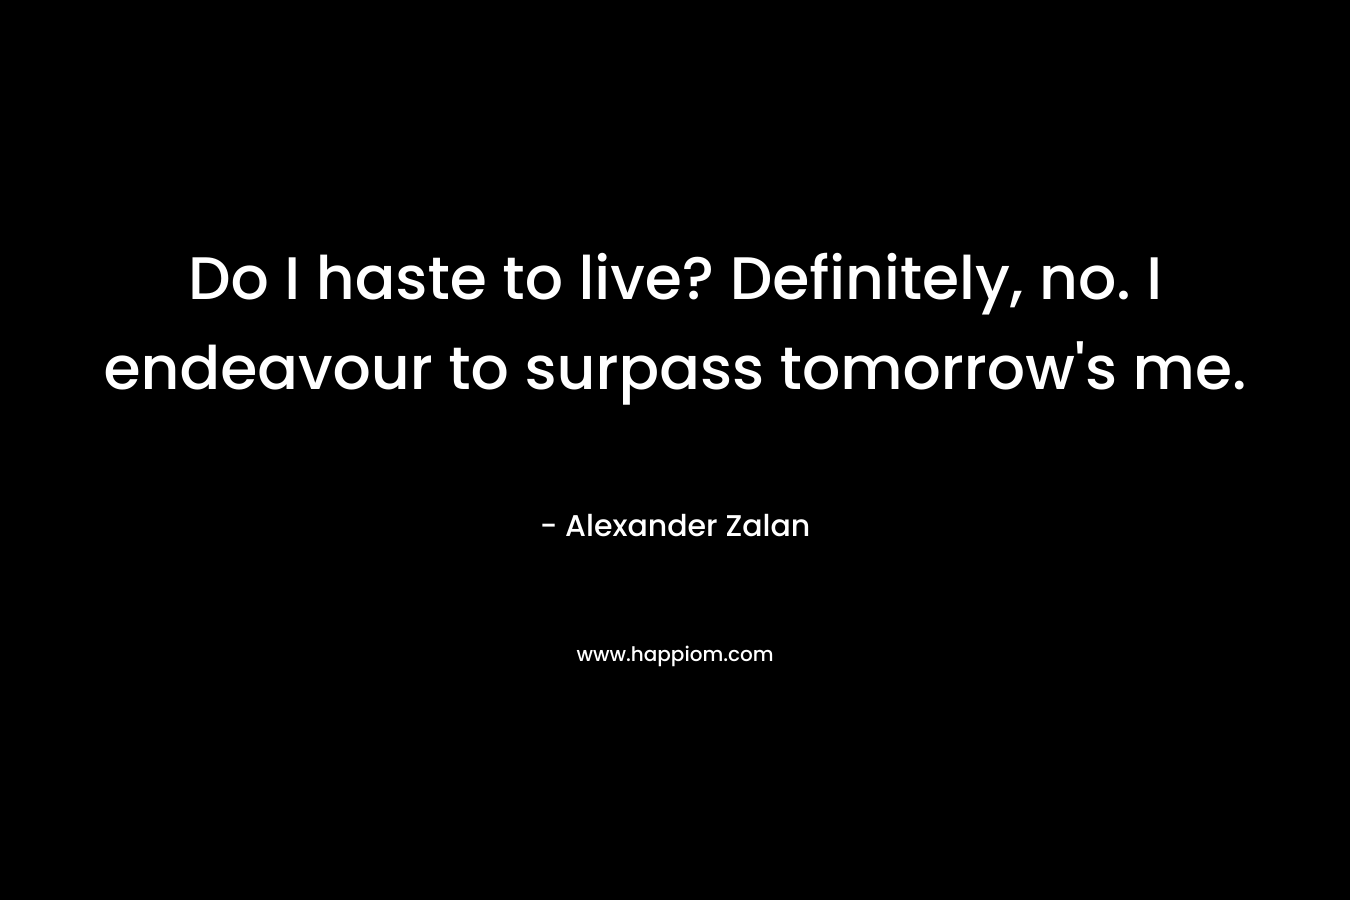 Do I haste to live? Definitely, no. I endeavour to surpass tomorrow’s me. – Alexander Zalan